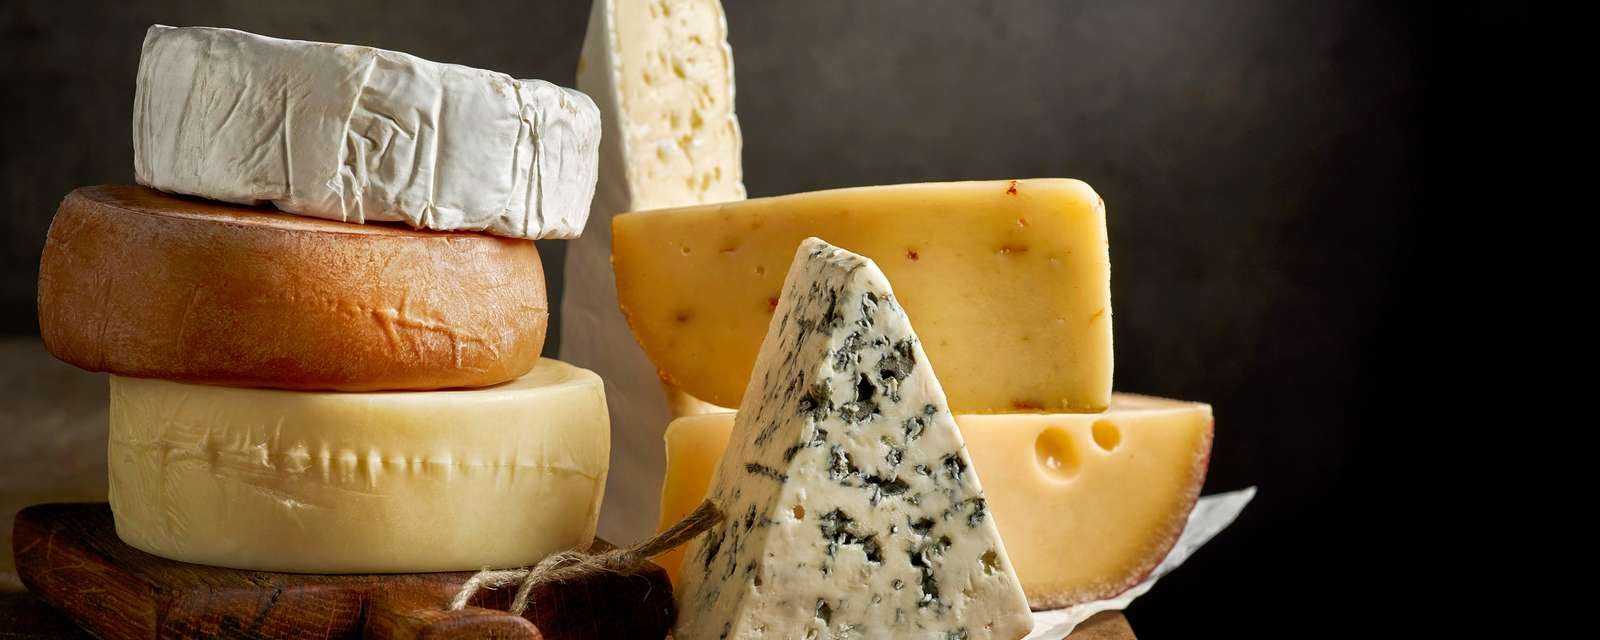 Käse auf Holztisch gestapelt